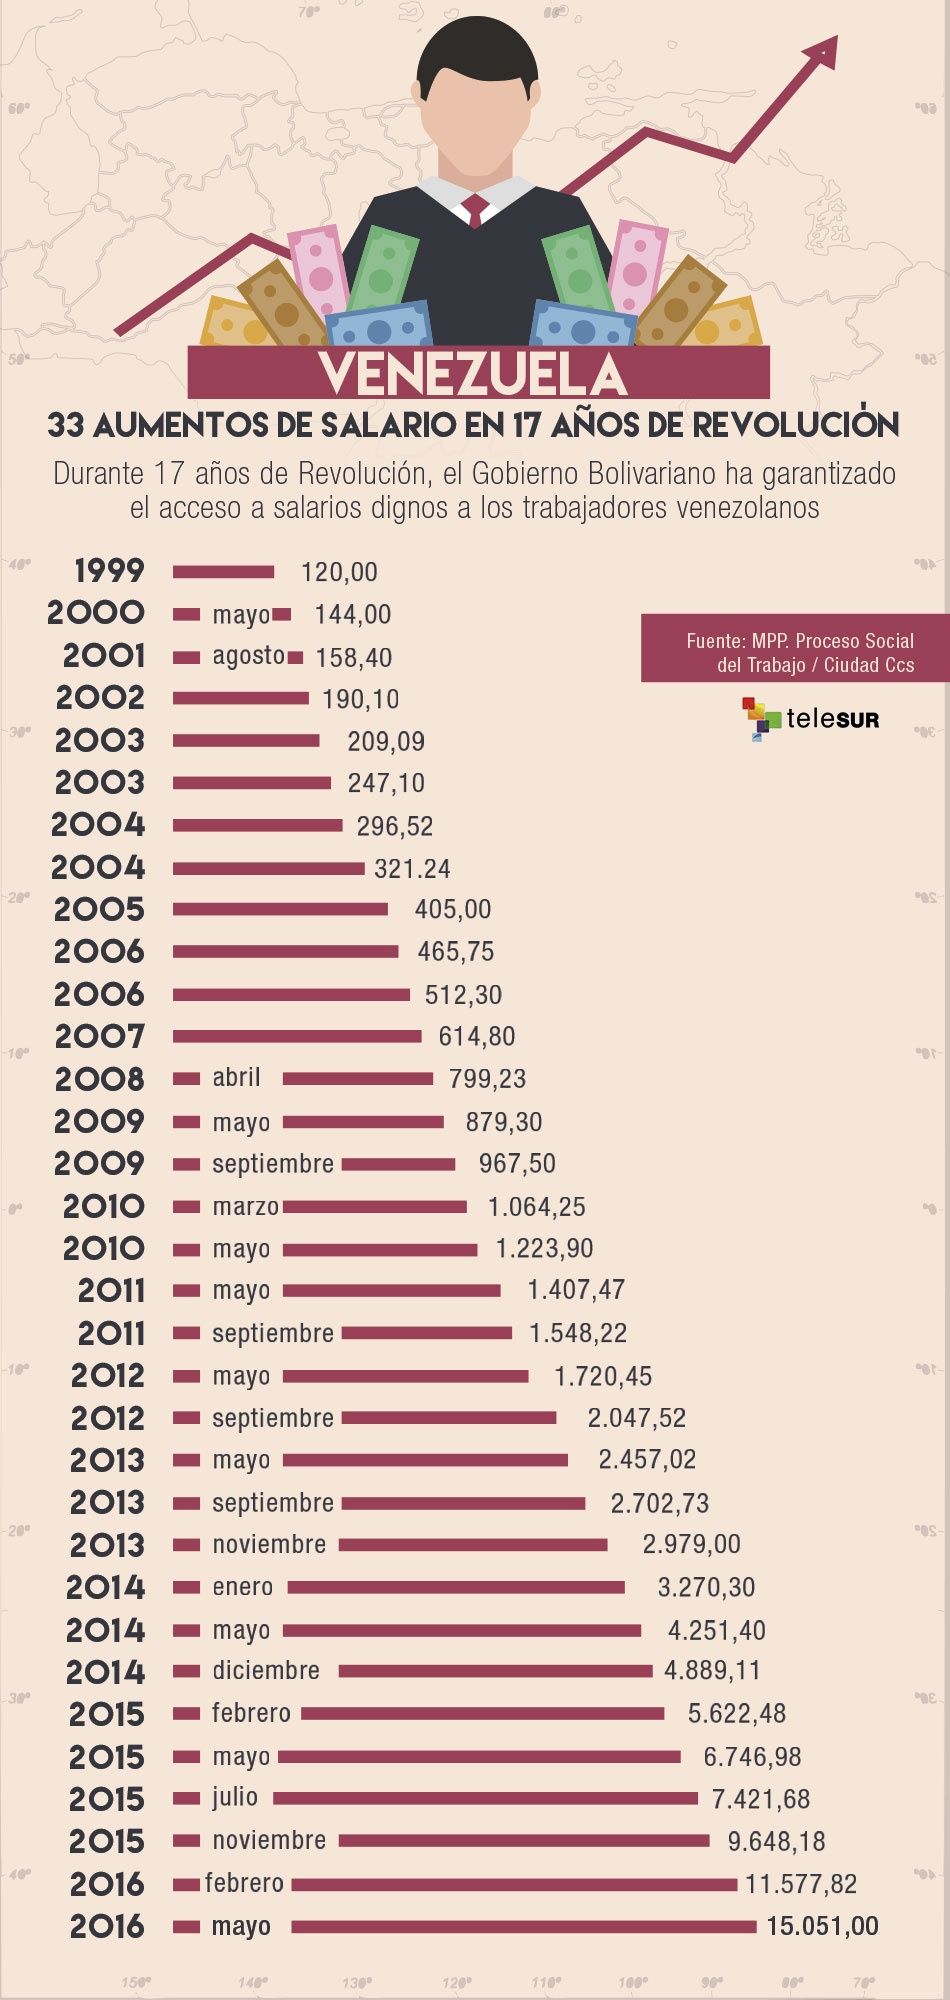 33 aumentos salariales en 17 años de Revolución Bolivariana